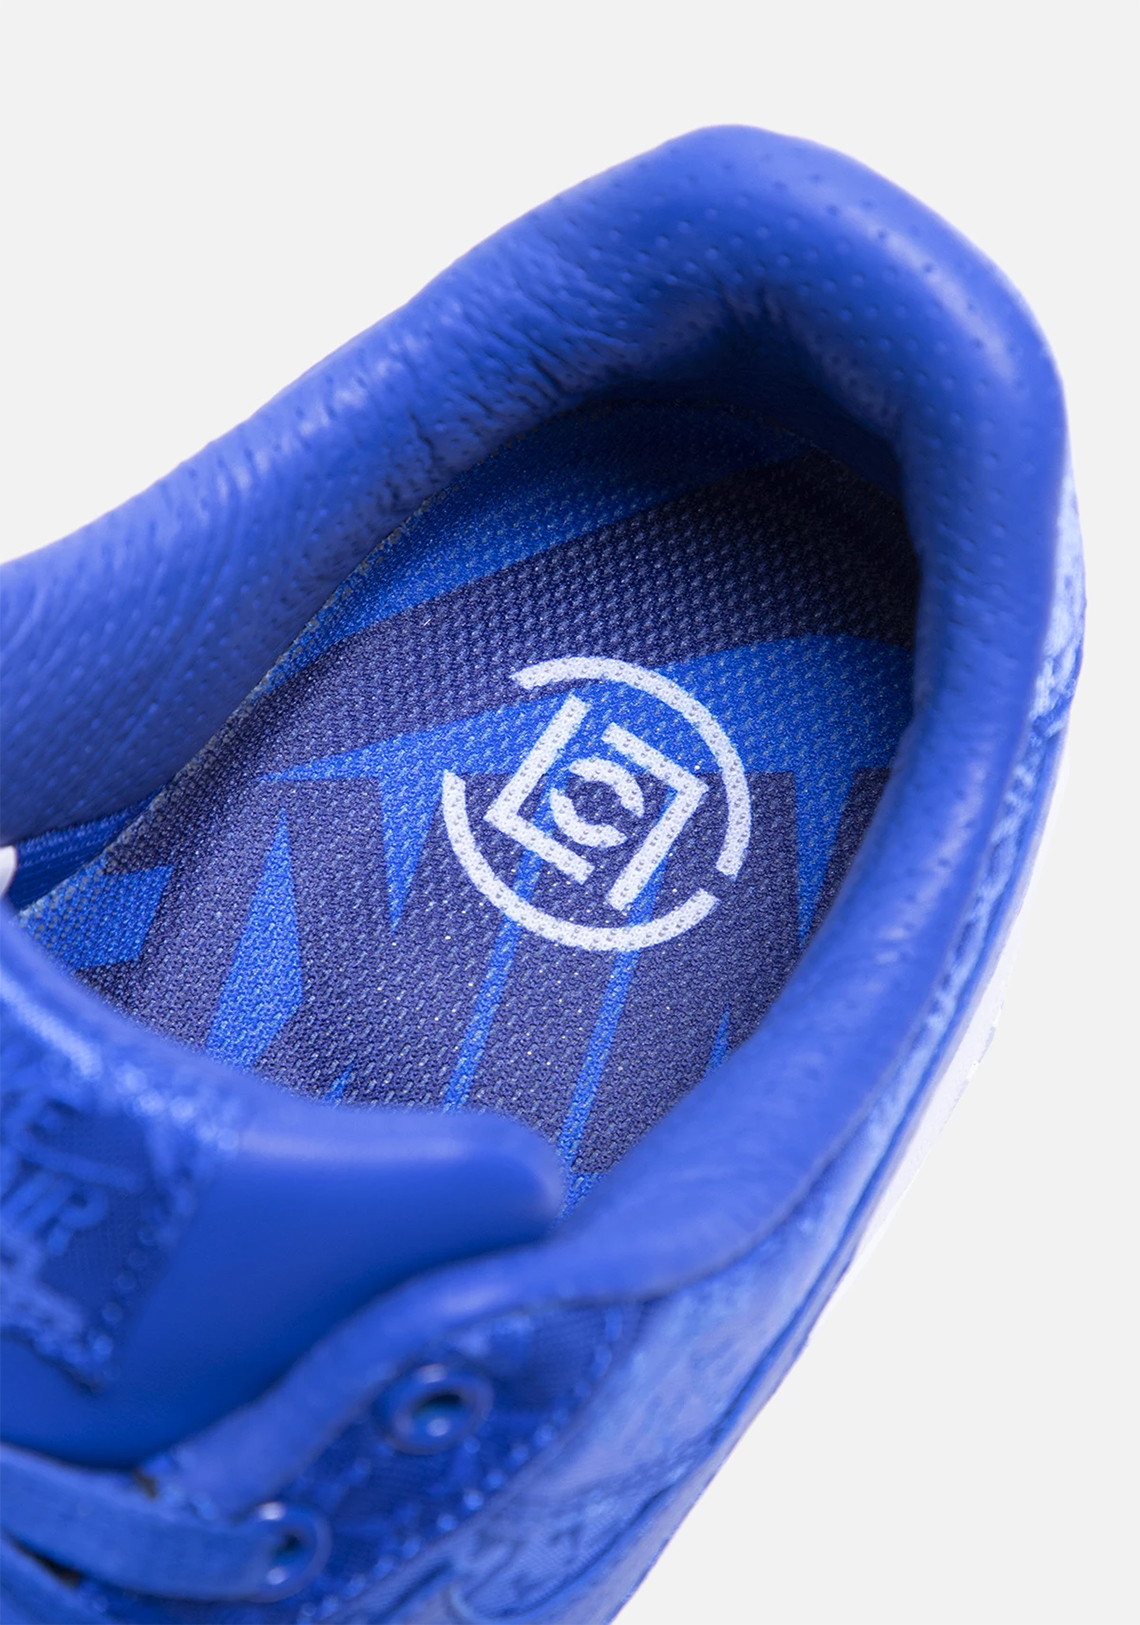 CLOT Nike Air Force 1 Blue Silk Release Date CJ5290-400 